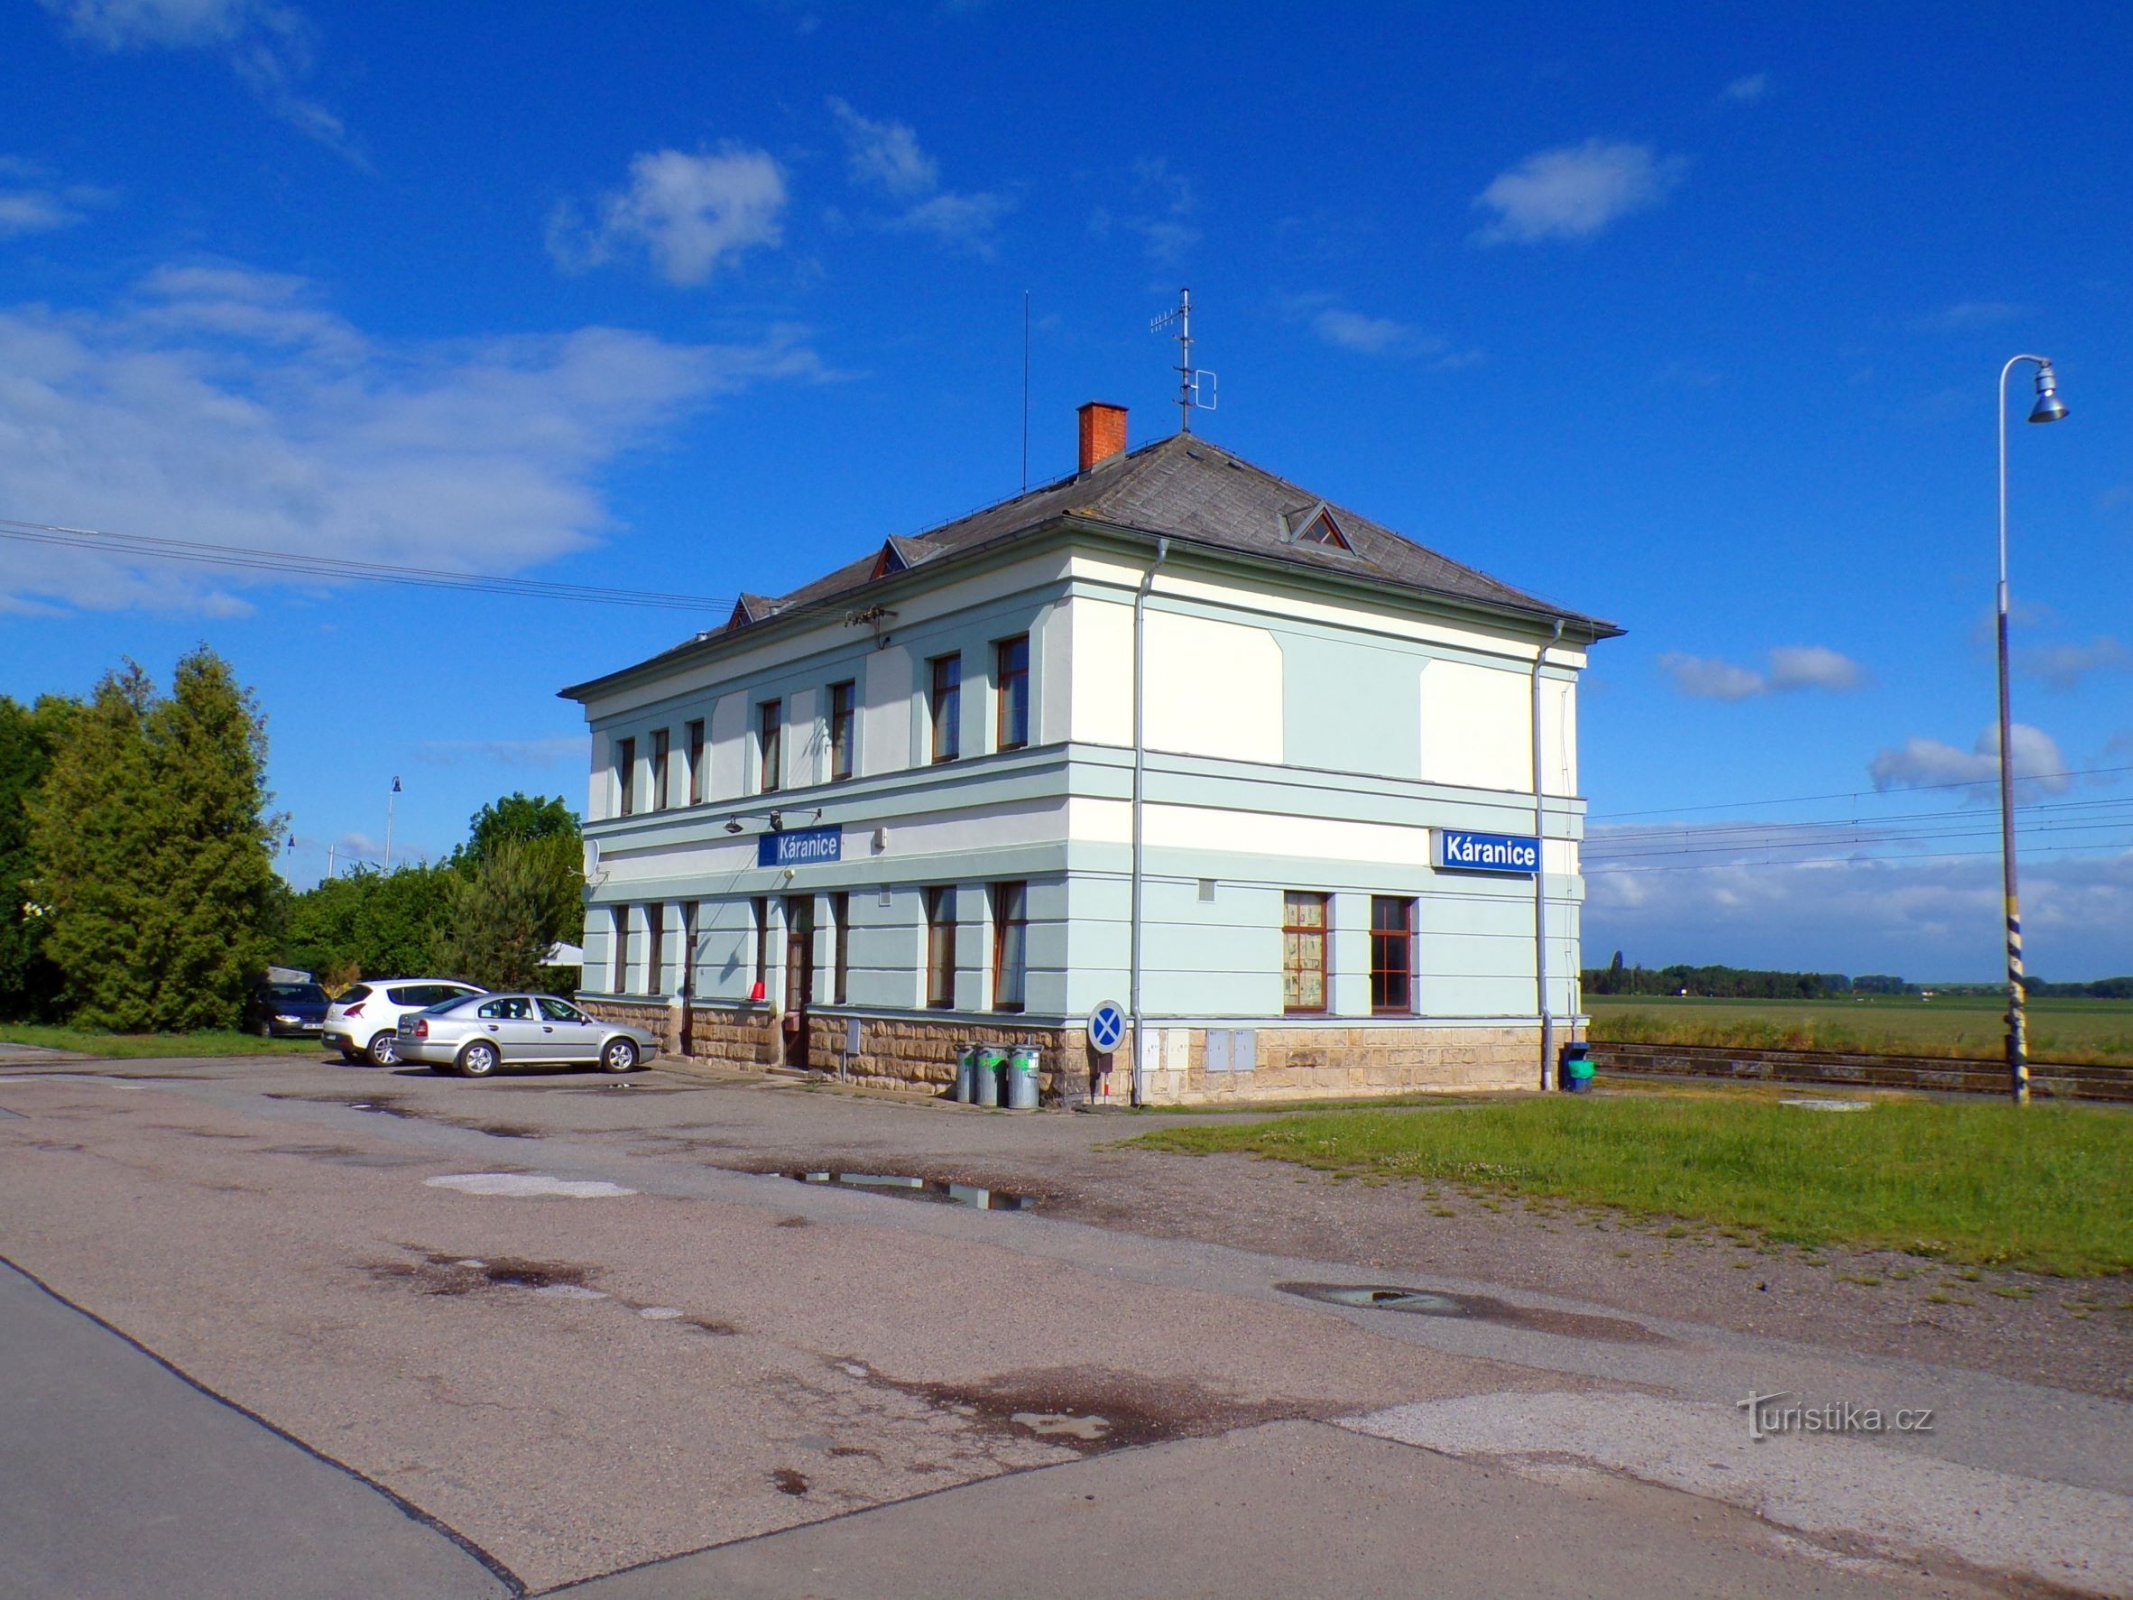 Edificio de la estación (Káranice, 29.5.2022/XNUMX/XNUMX)